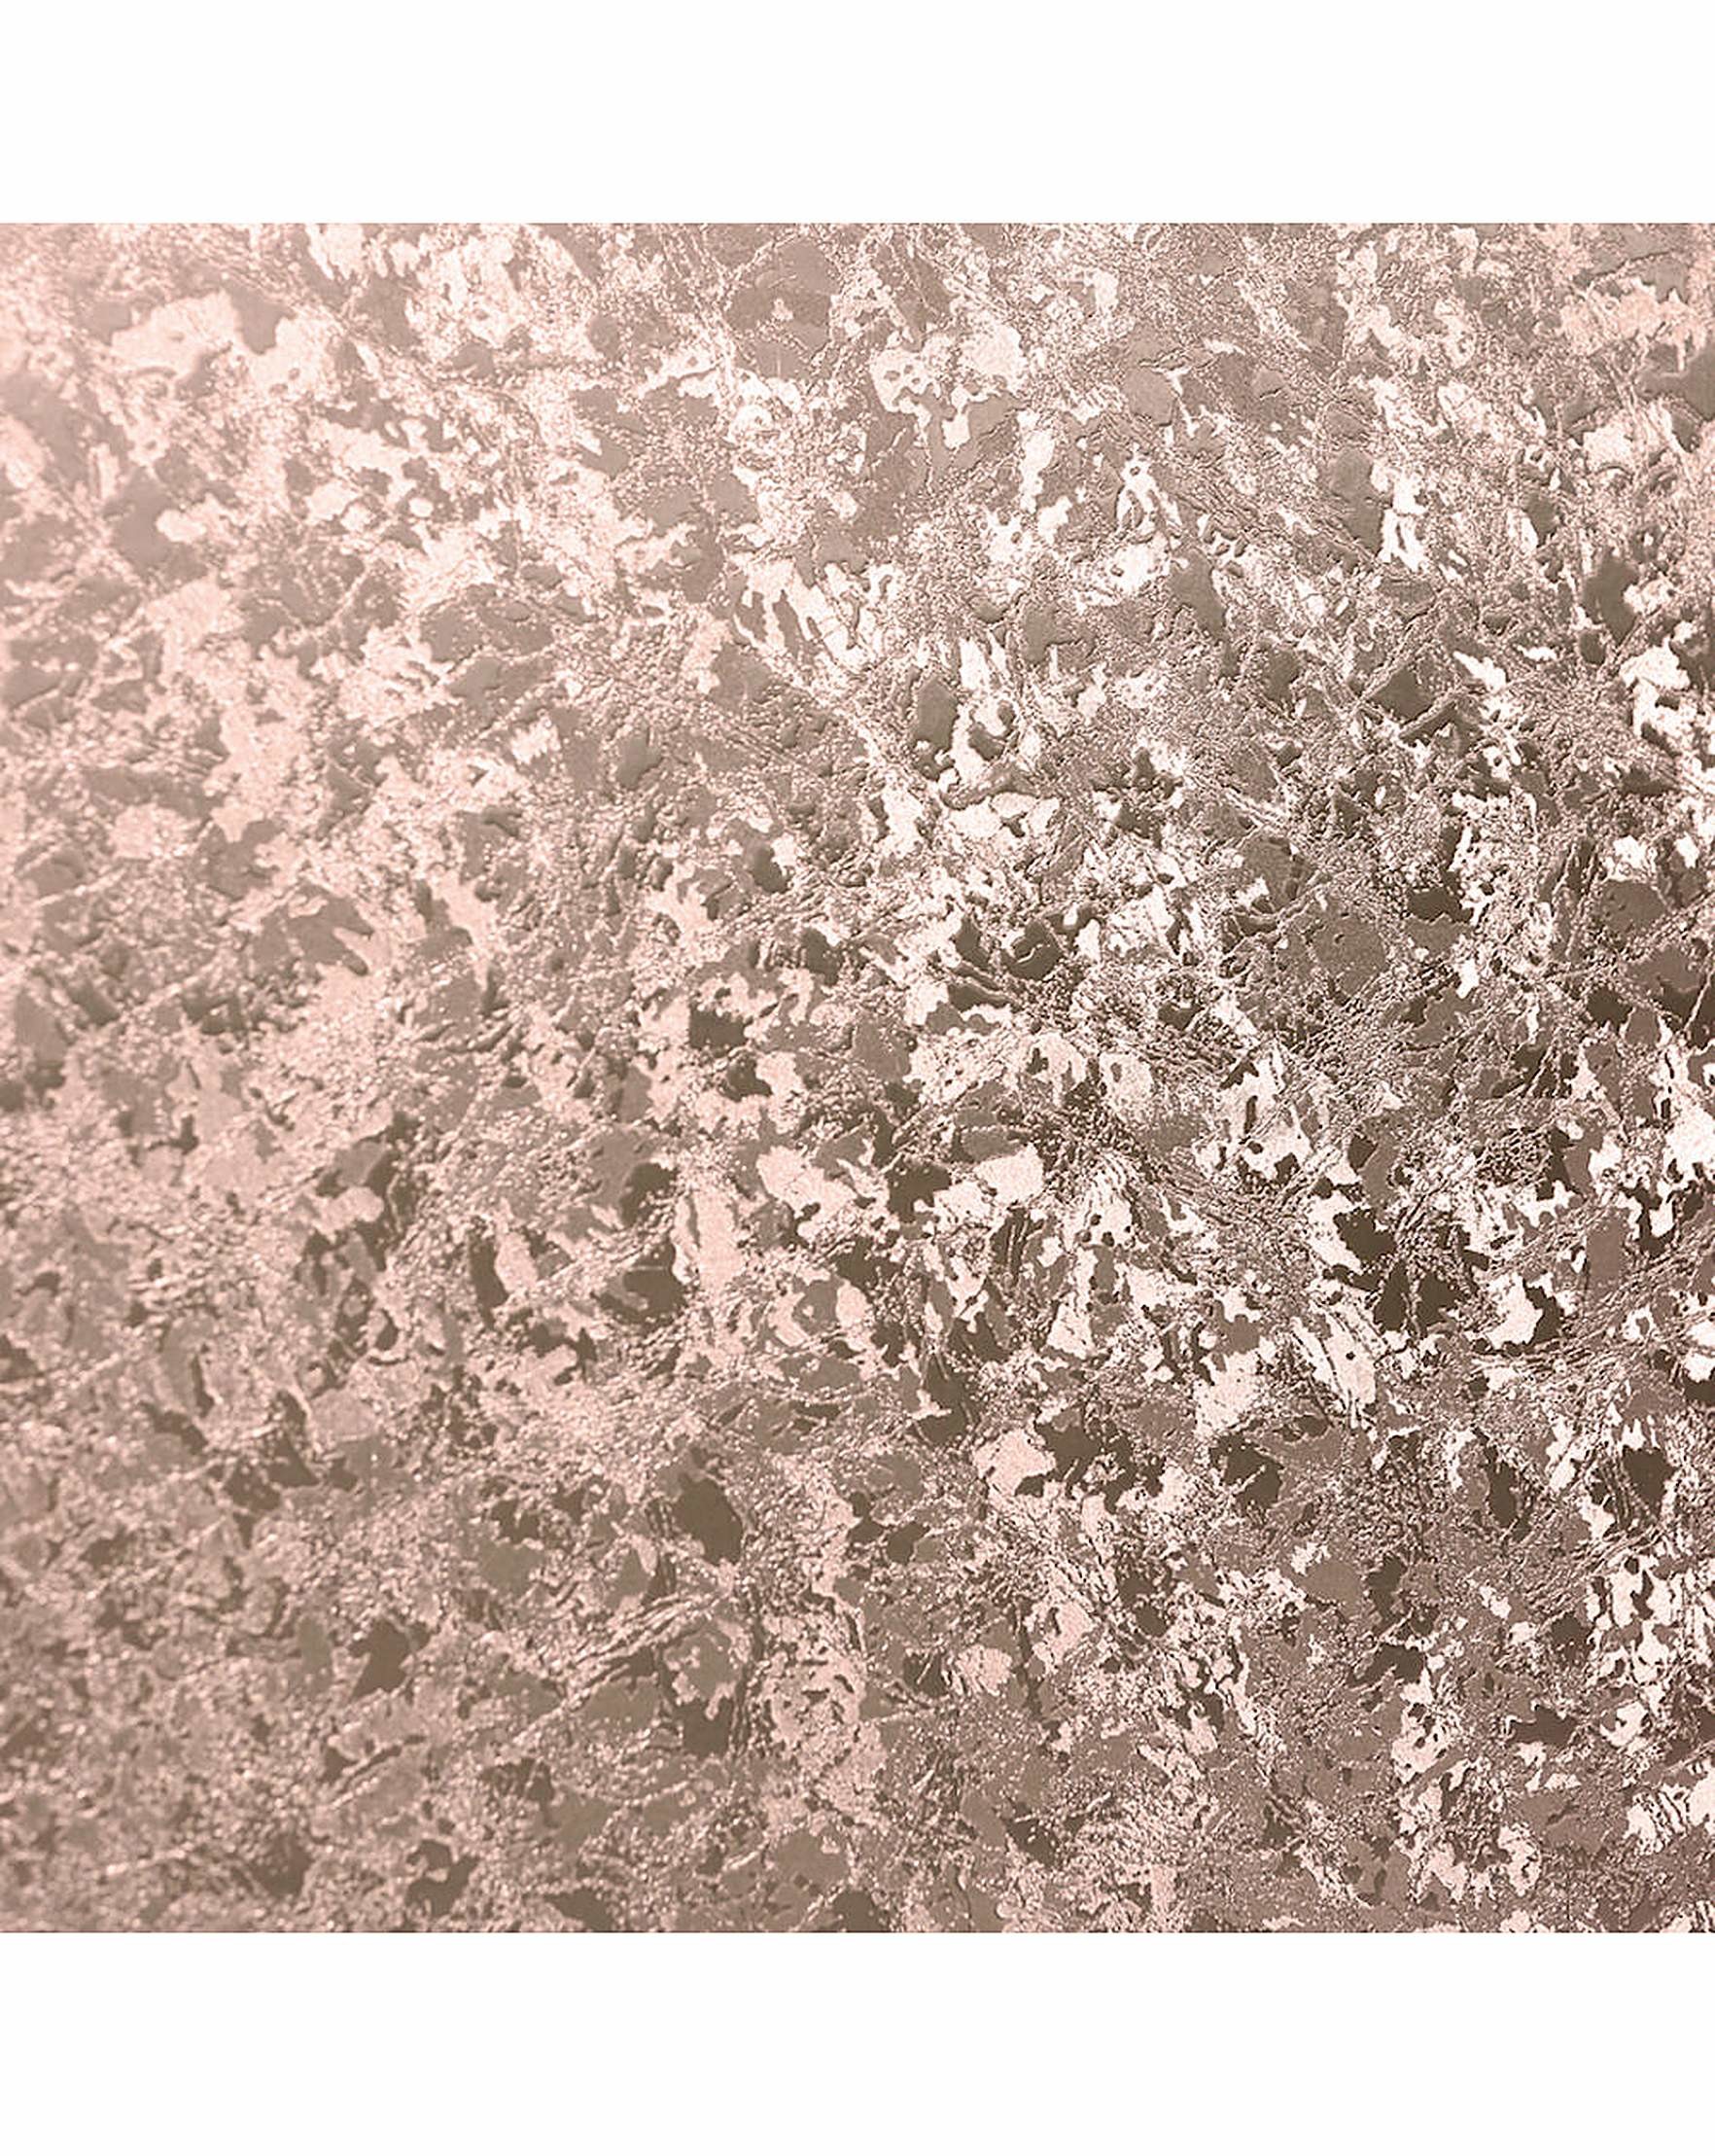 Data Src Popular Glamorous Wallpaper For 1080p - Crushed Velvet Rose Gold - HD Wallpaper 